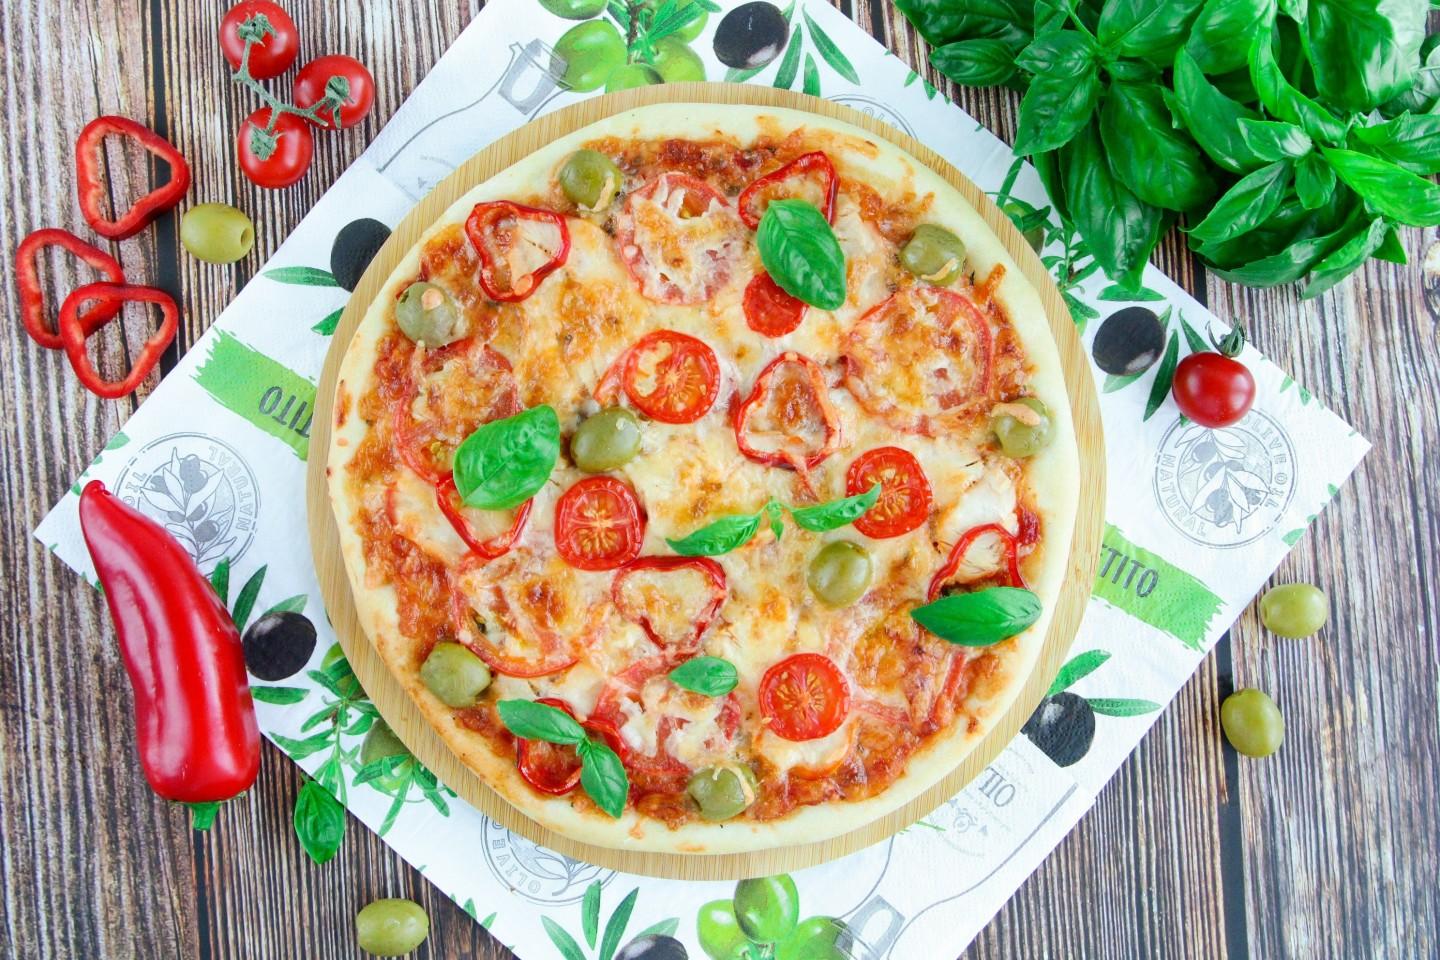 юлия высоцкая рецепты пиццы фото 110